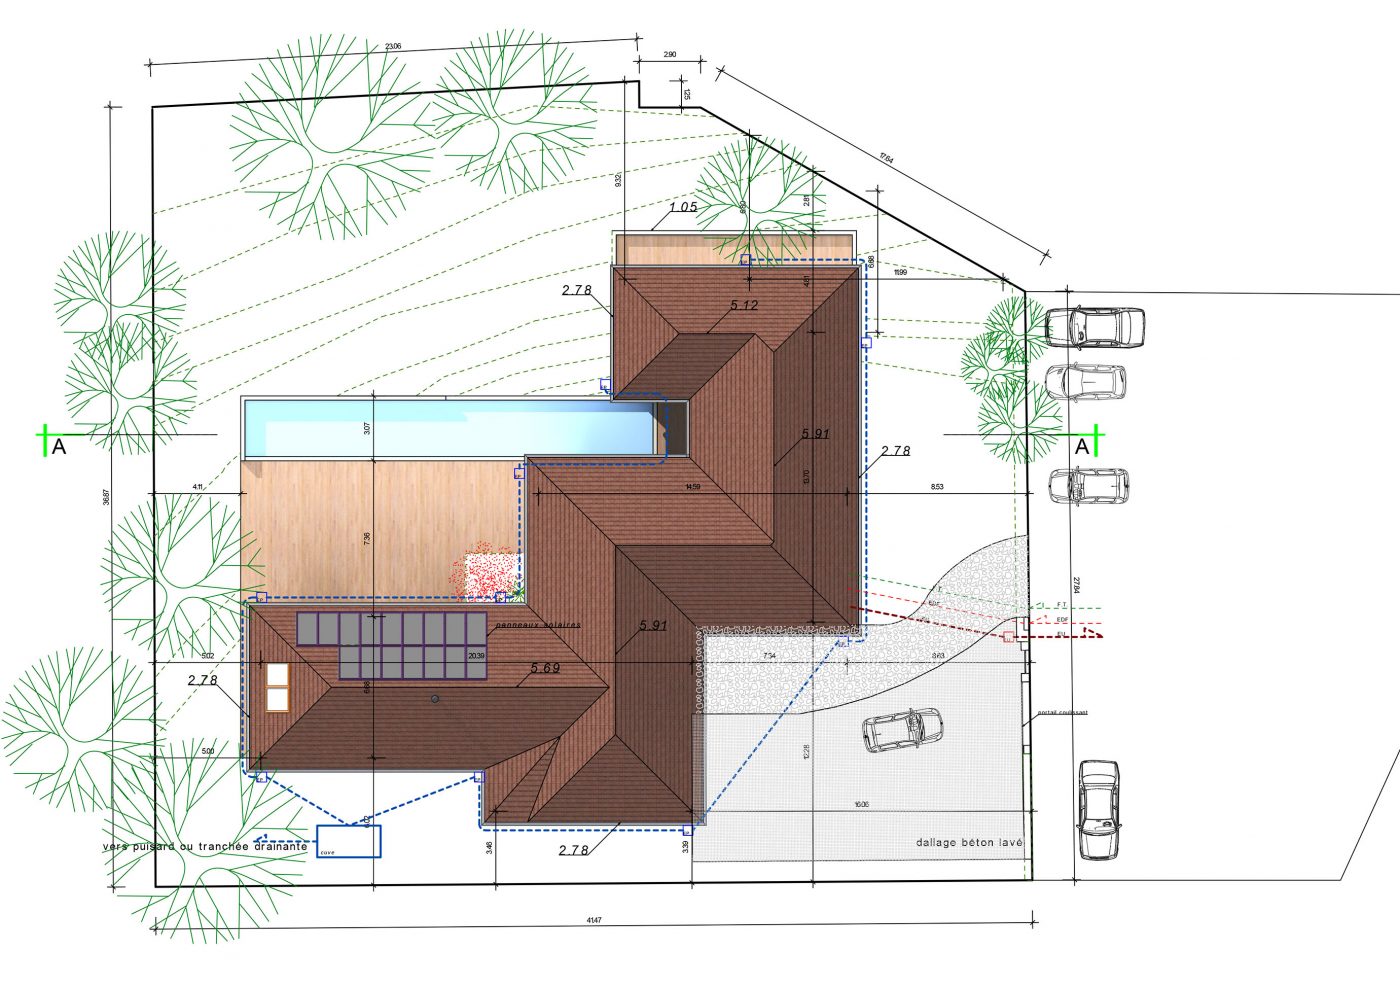 Philippe_Zerbib_Architecte_construction_maisons_ossature_bois_projet_maison_lachaux_d@PCMI2b.jpg